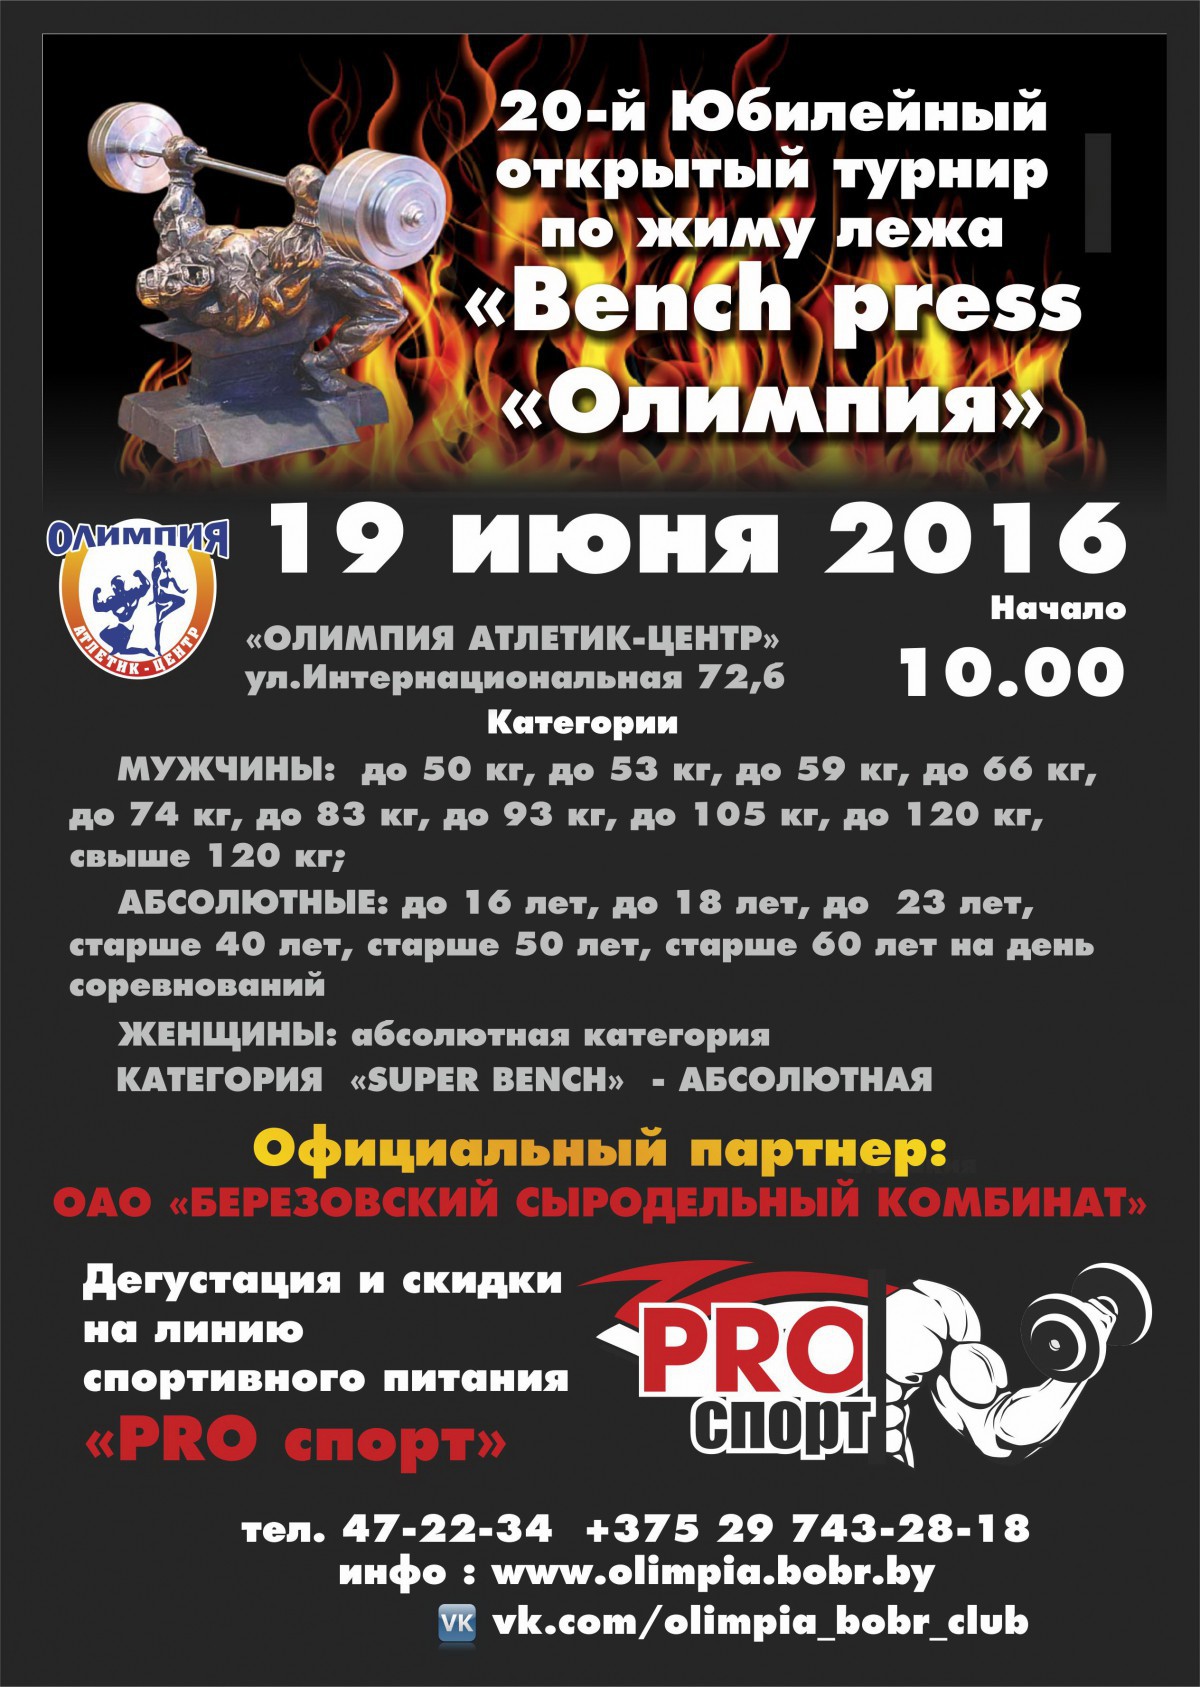 19 июня 20-й Открытый турнир по жиму лежа «Bench press «Олимпия»